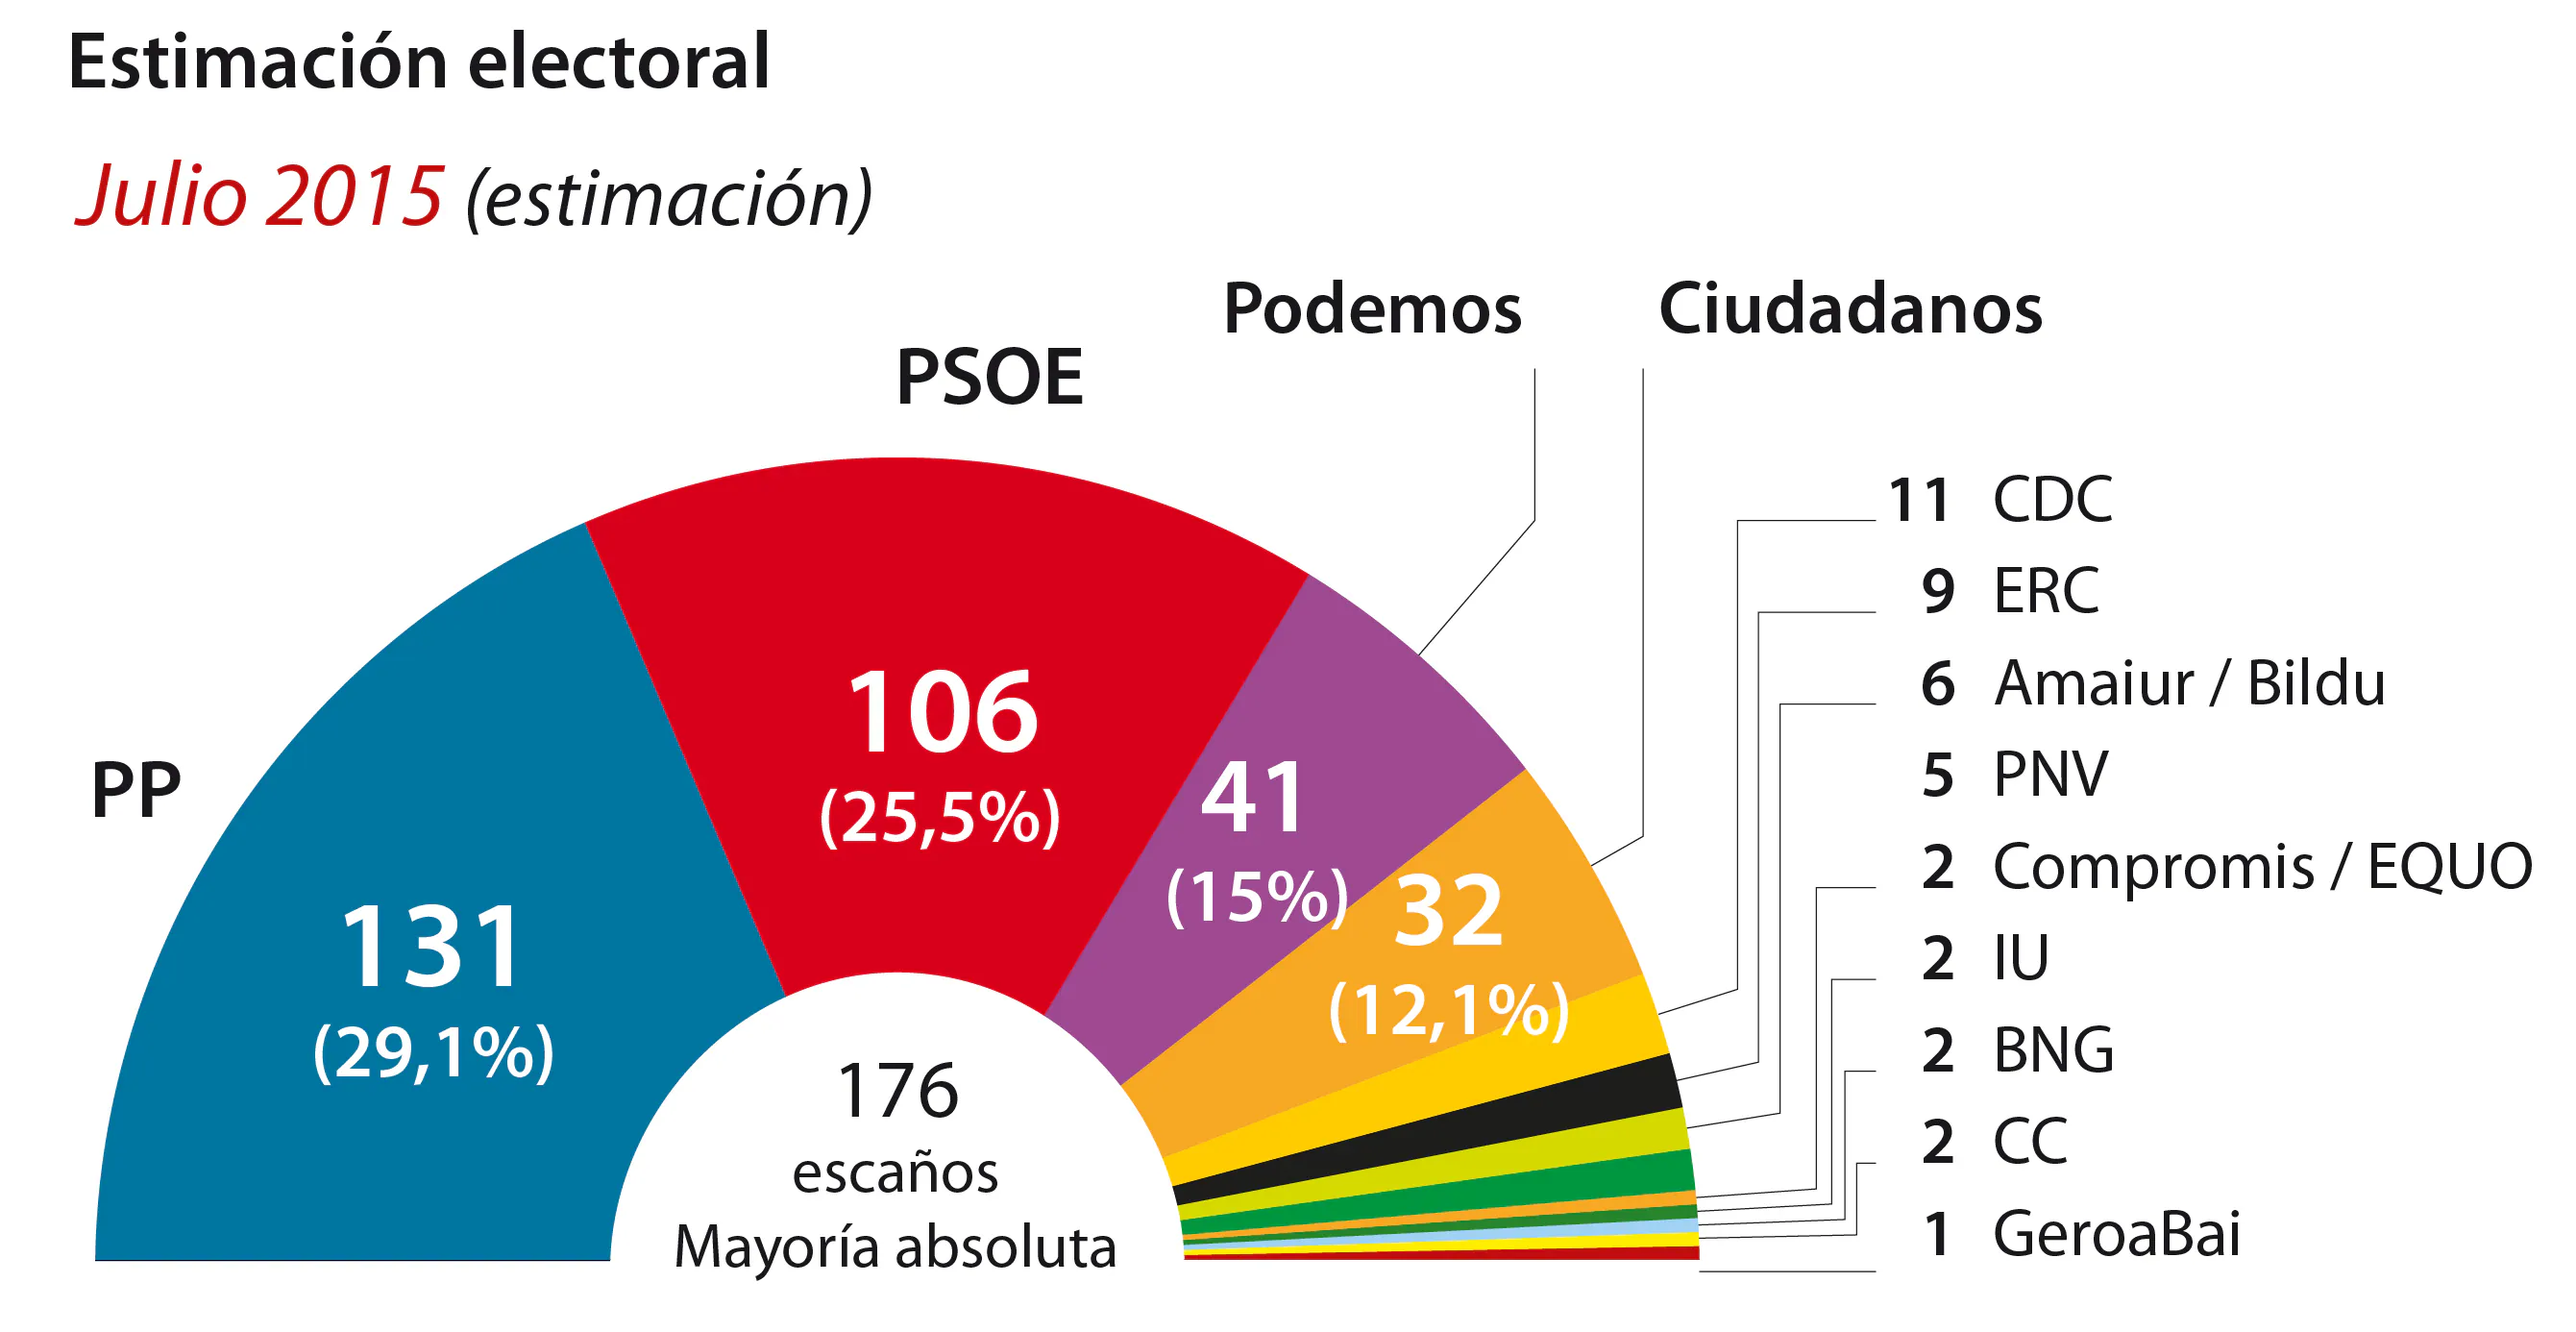 El PP sigue en caída pero logra mayoría absoluta con Ciudadanos